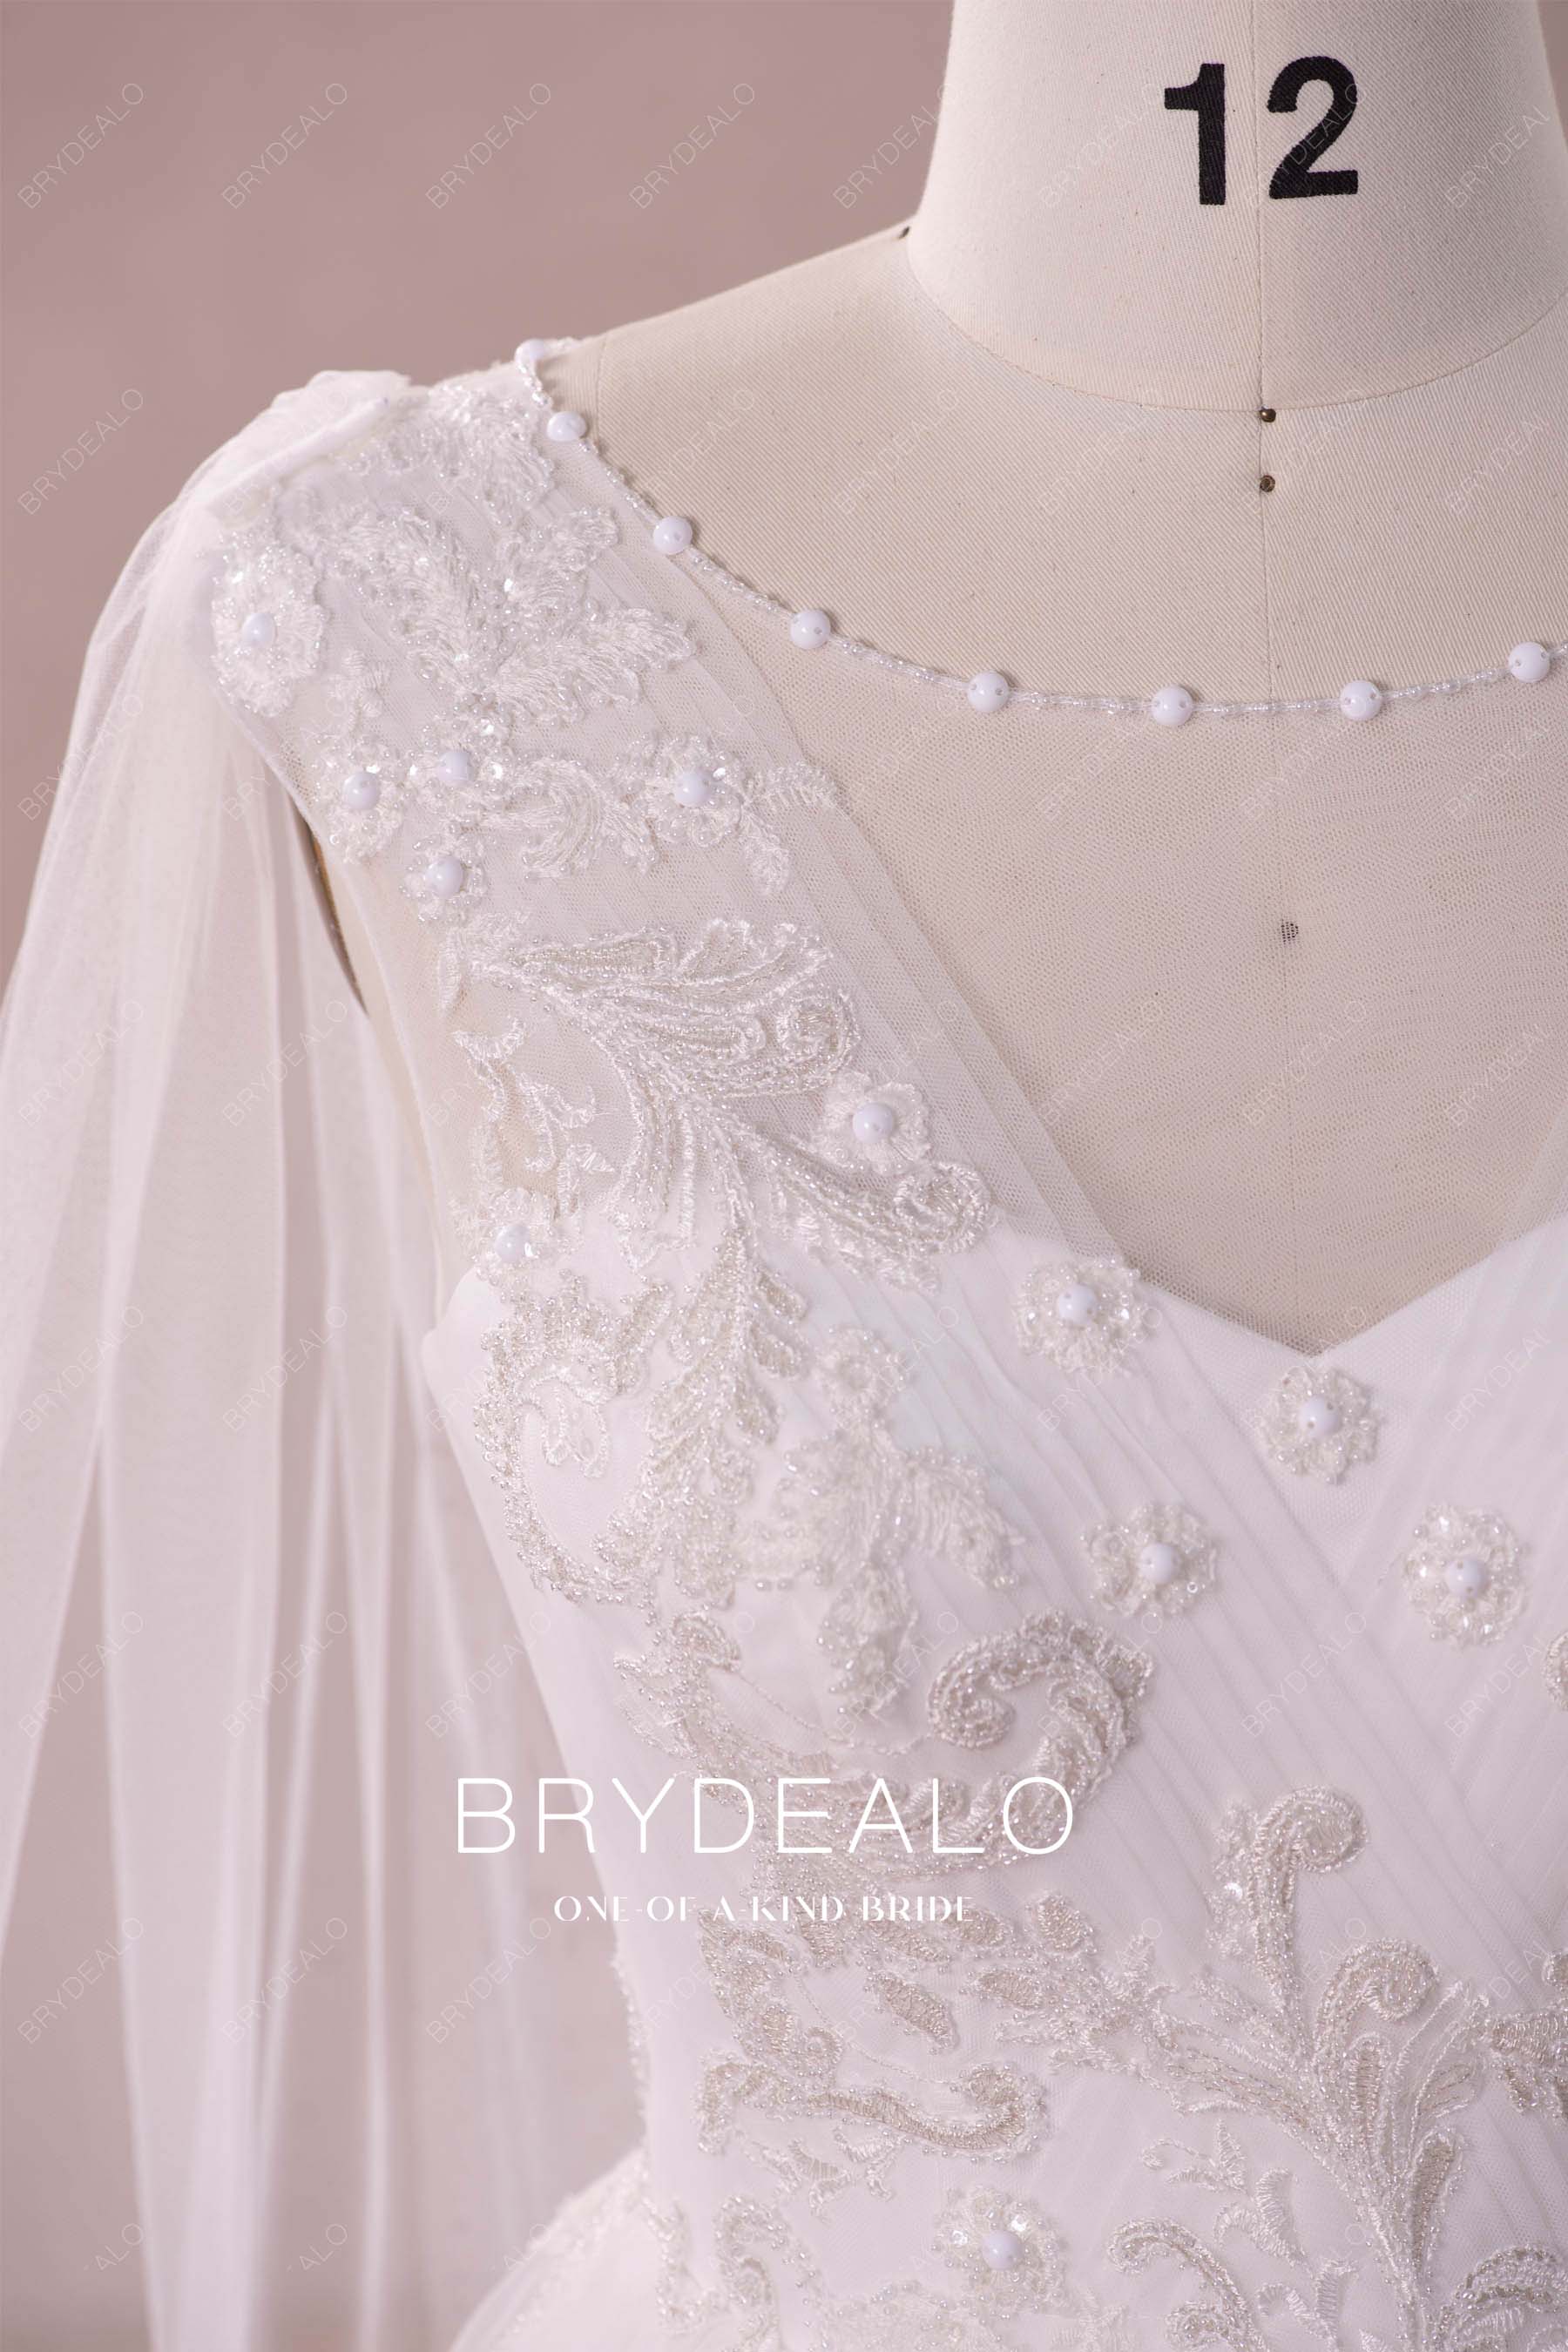 beaded shoulder veil winter wedding gown